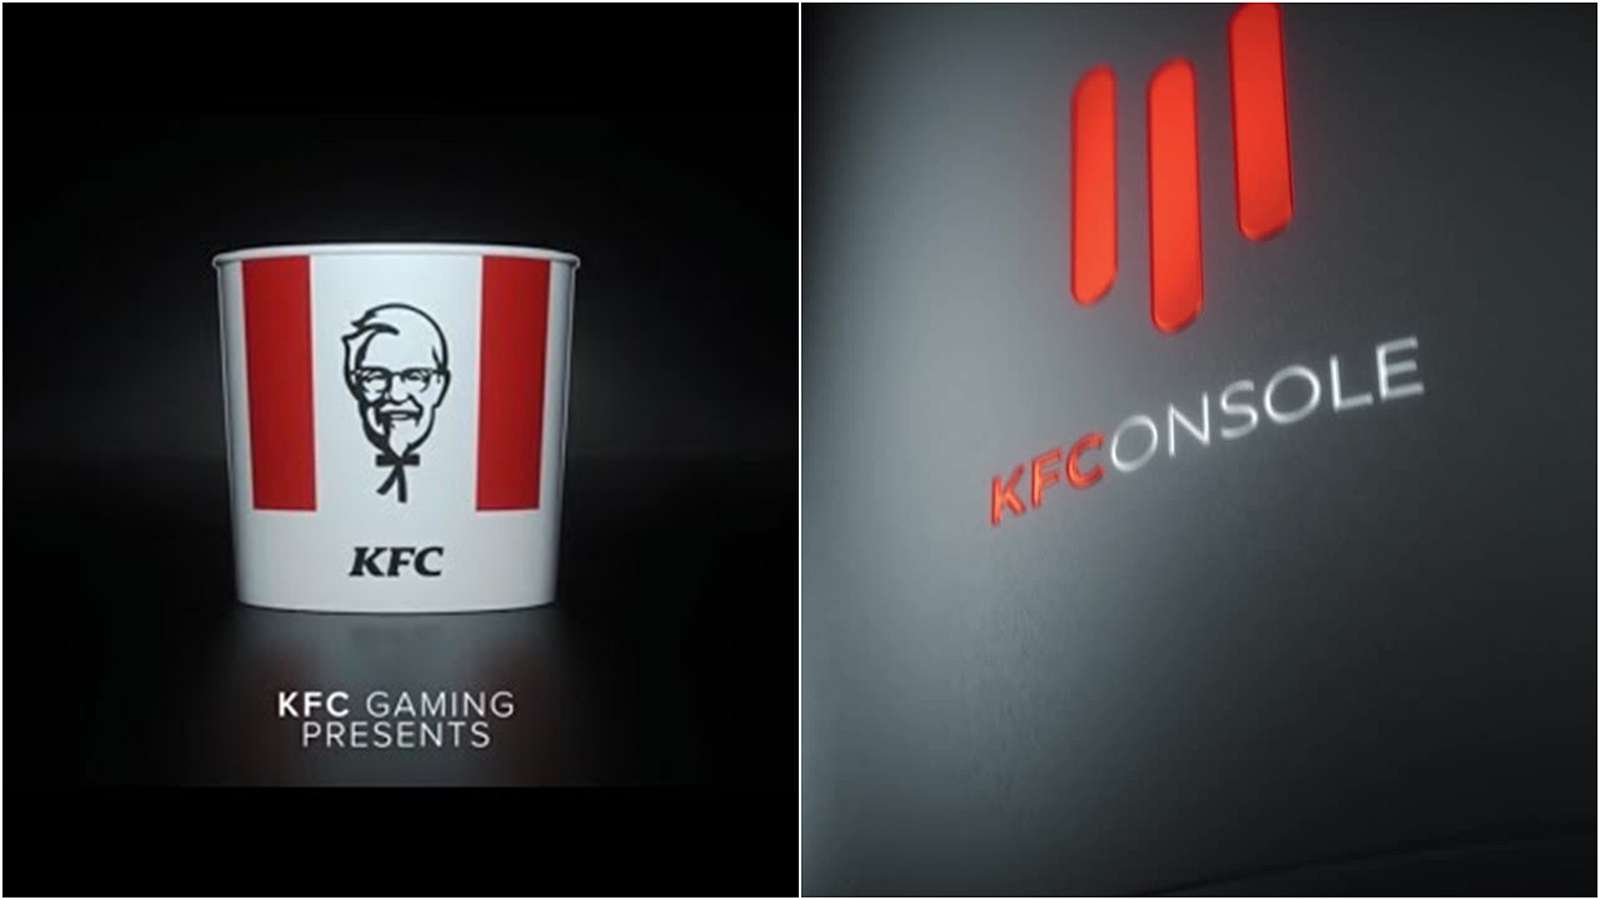 KFC konzole jako odpověď na Playstation 5